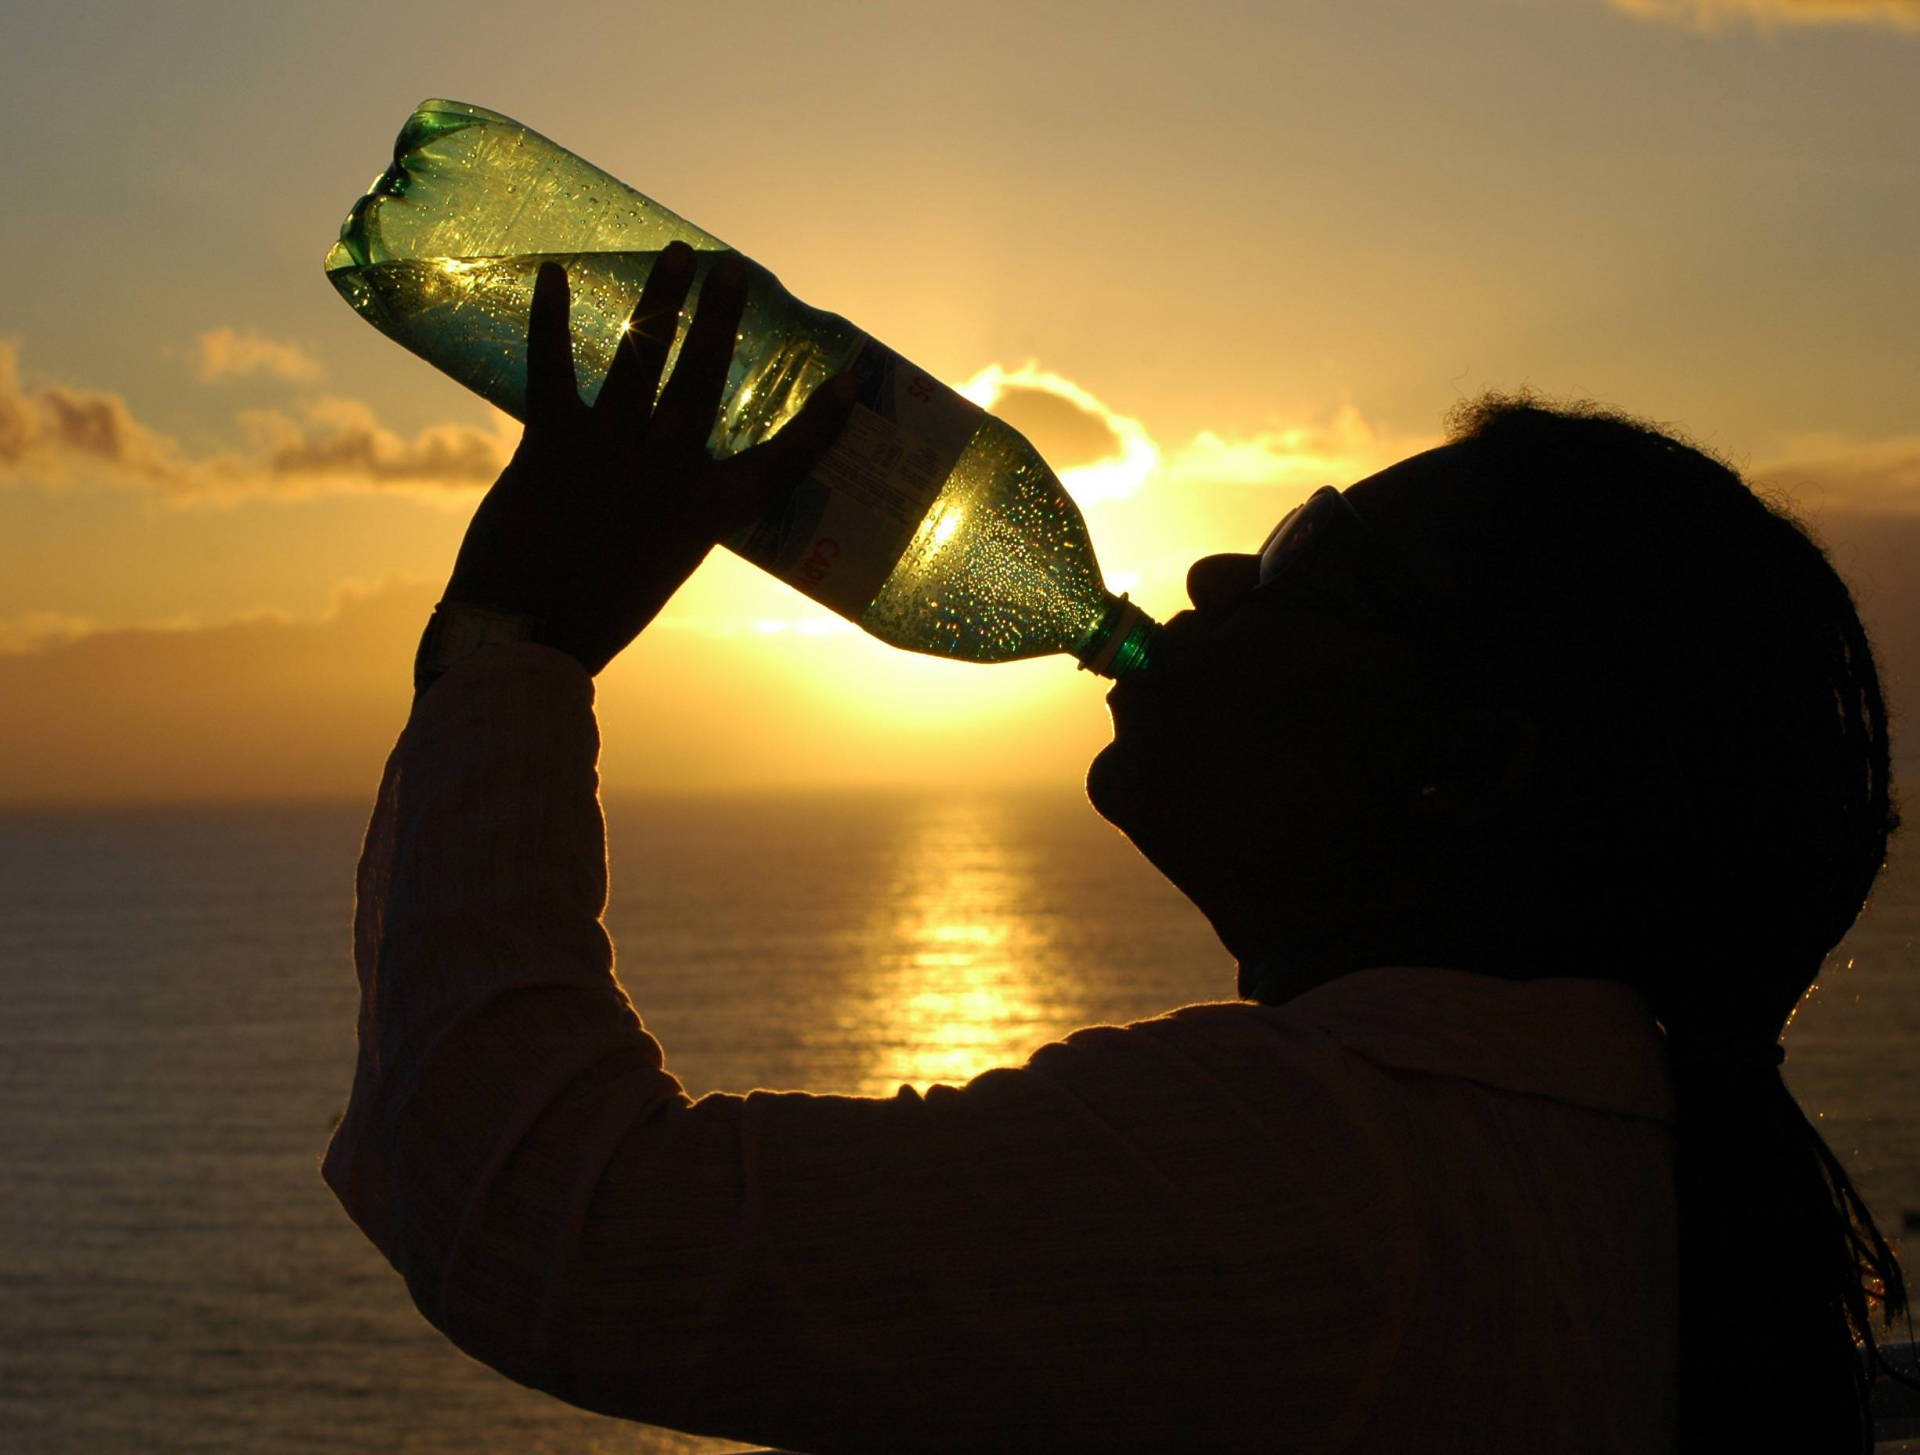 thirst-1317042-voda-pice-zedj-vrucina-pixabay.jpg